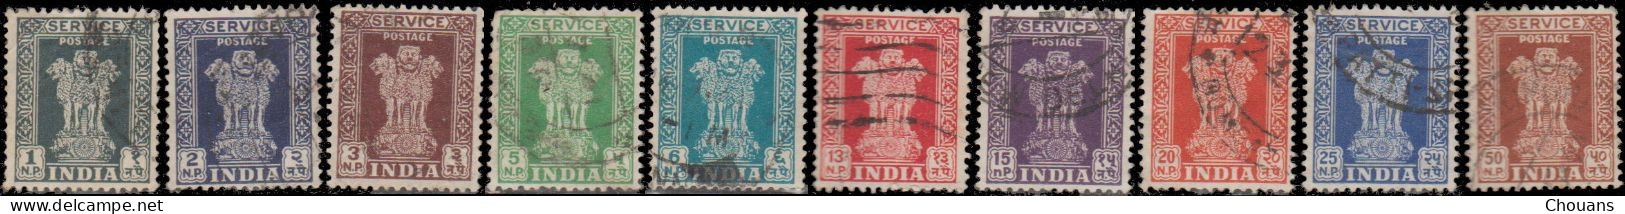 Inde Service 1957/58 - S 14 à 22 -  Colonne D'Asoka - Dienstzegels